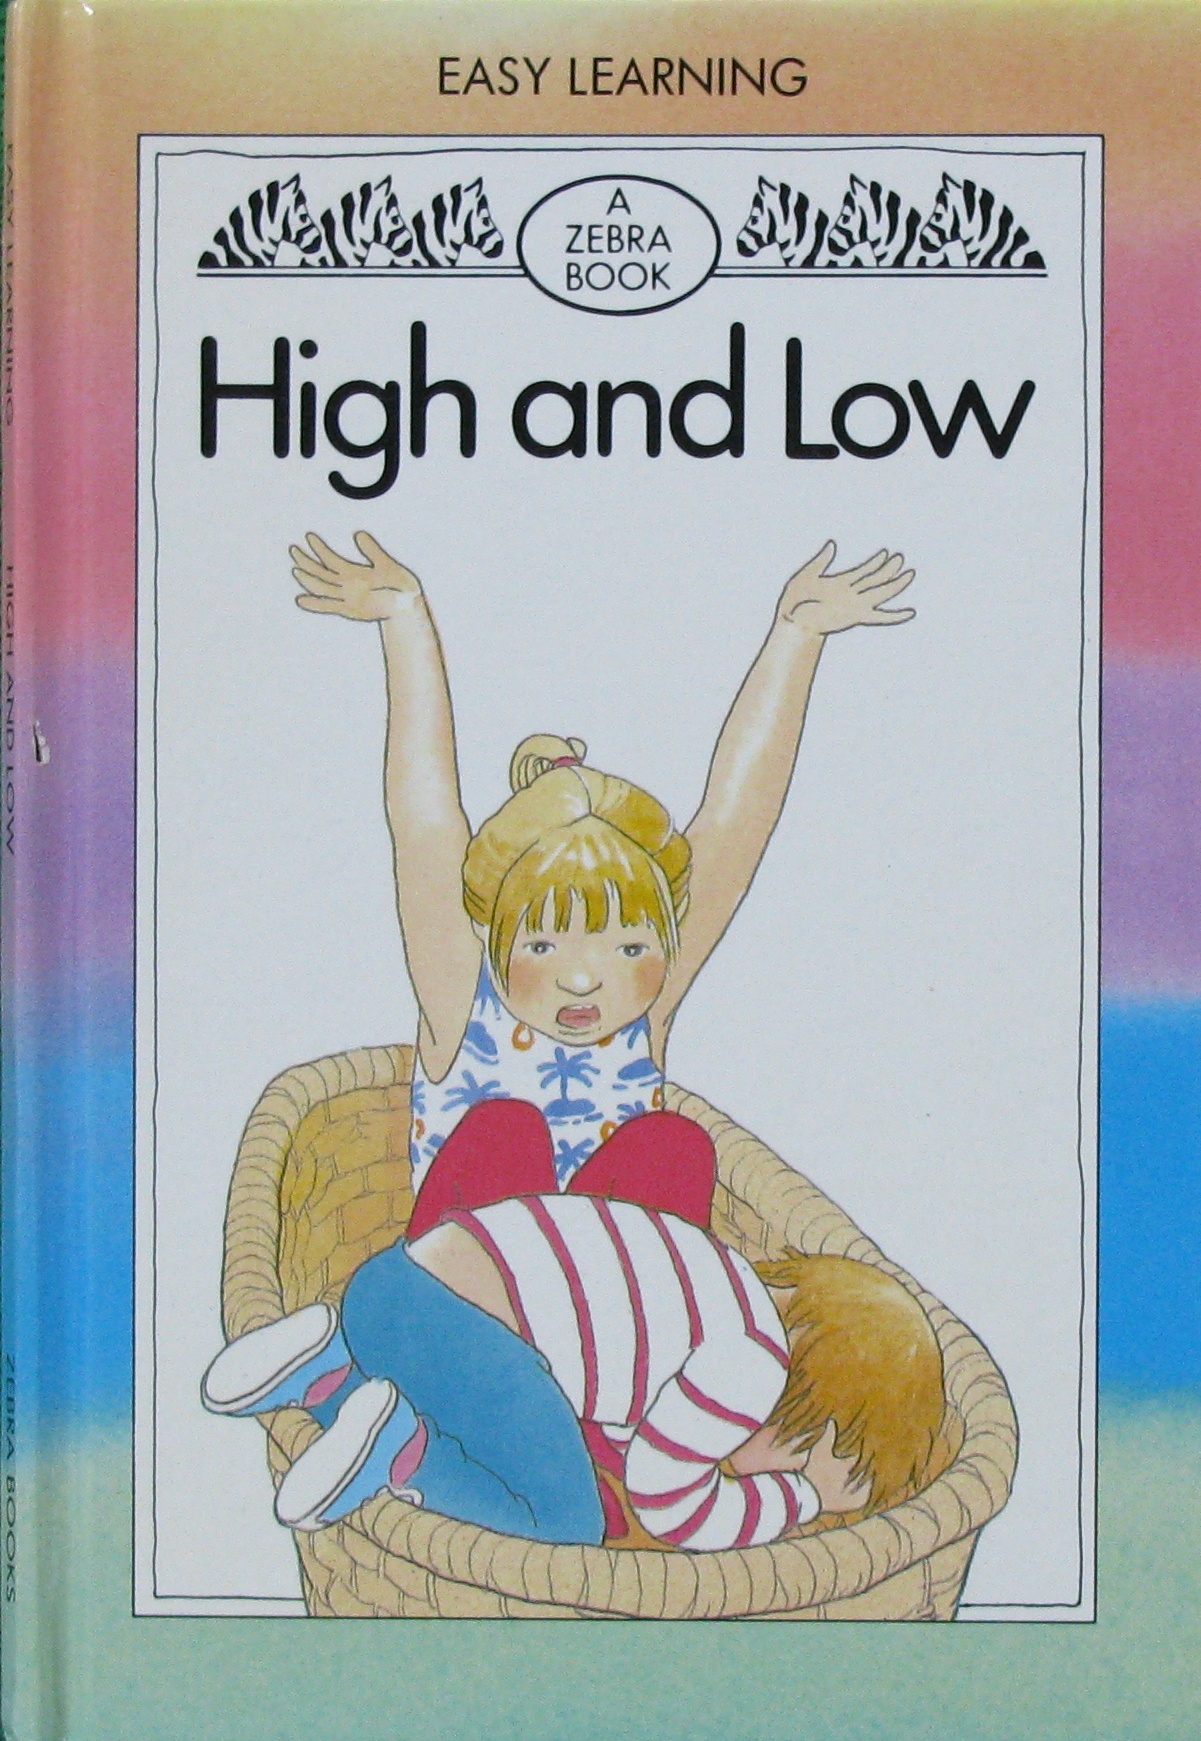 High And Low Zebra Easy Learning Books 早期的读者系列 儿童图书 进口图书 进口书 原版书 绘本书 英文原版图书 儿童纸板书 外语图书 进口儿童书 原版儿童书